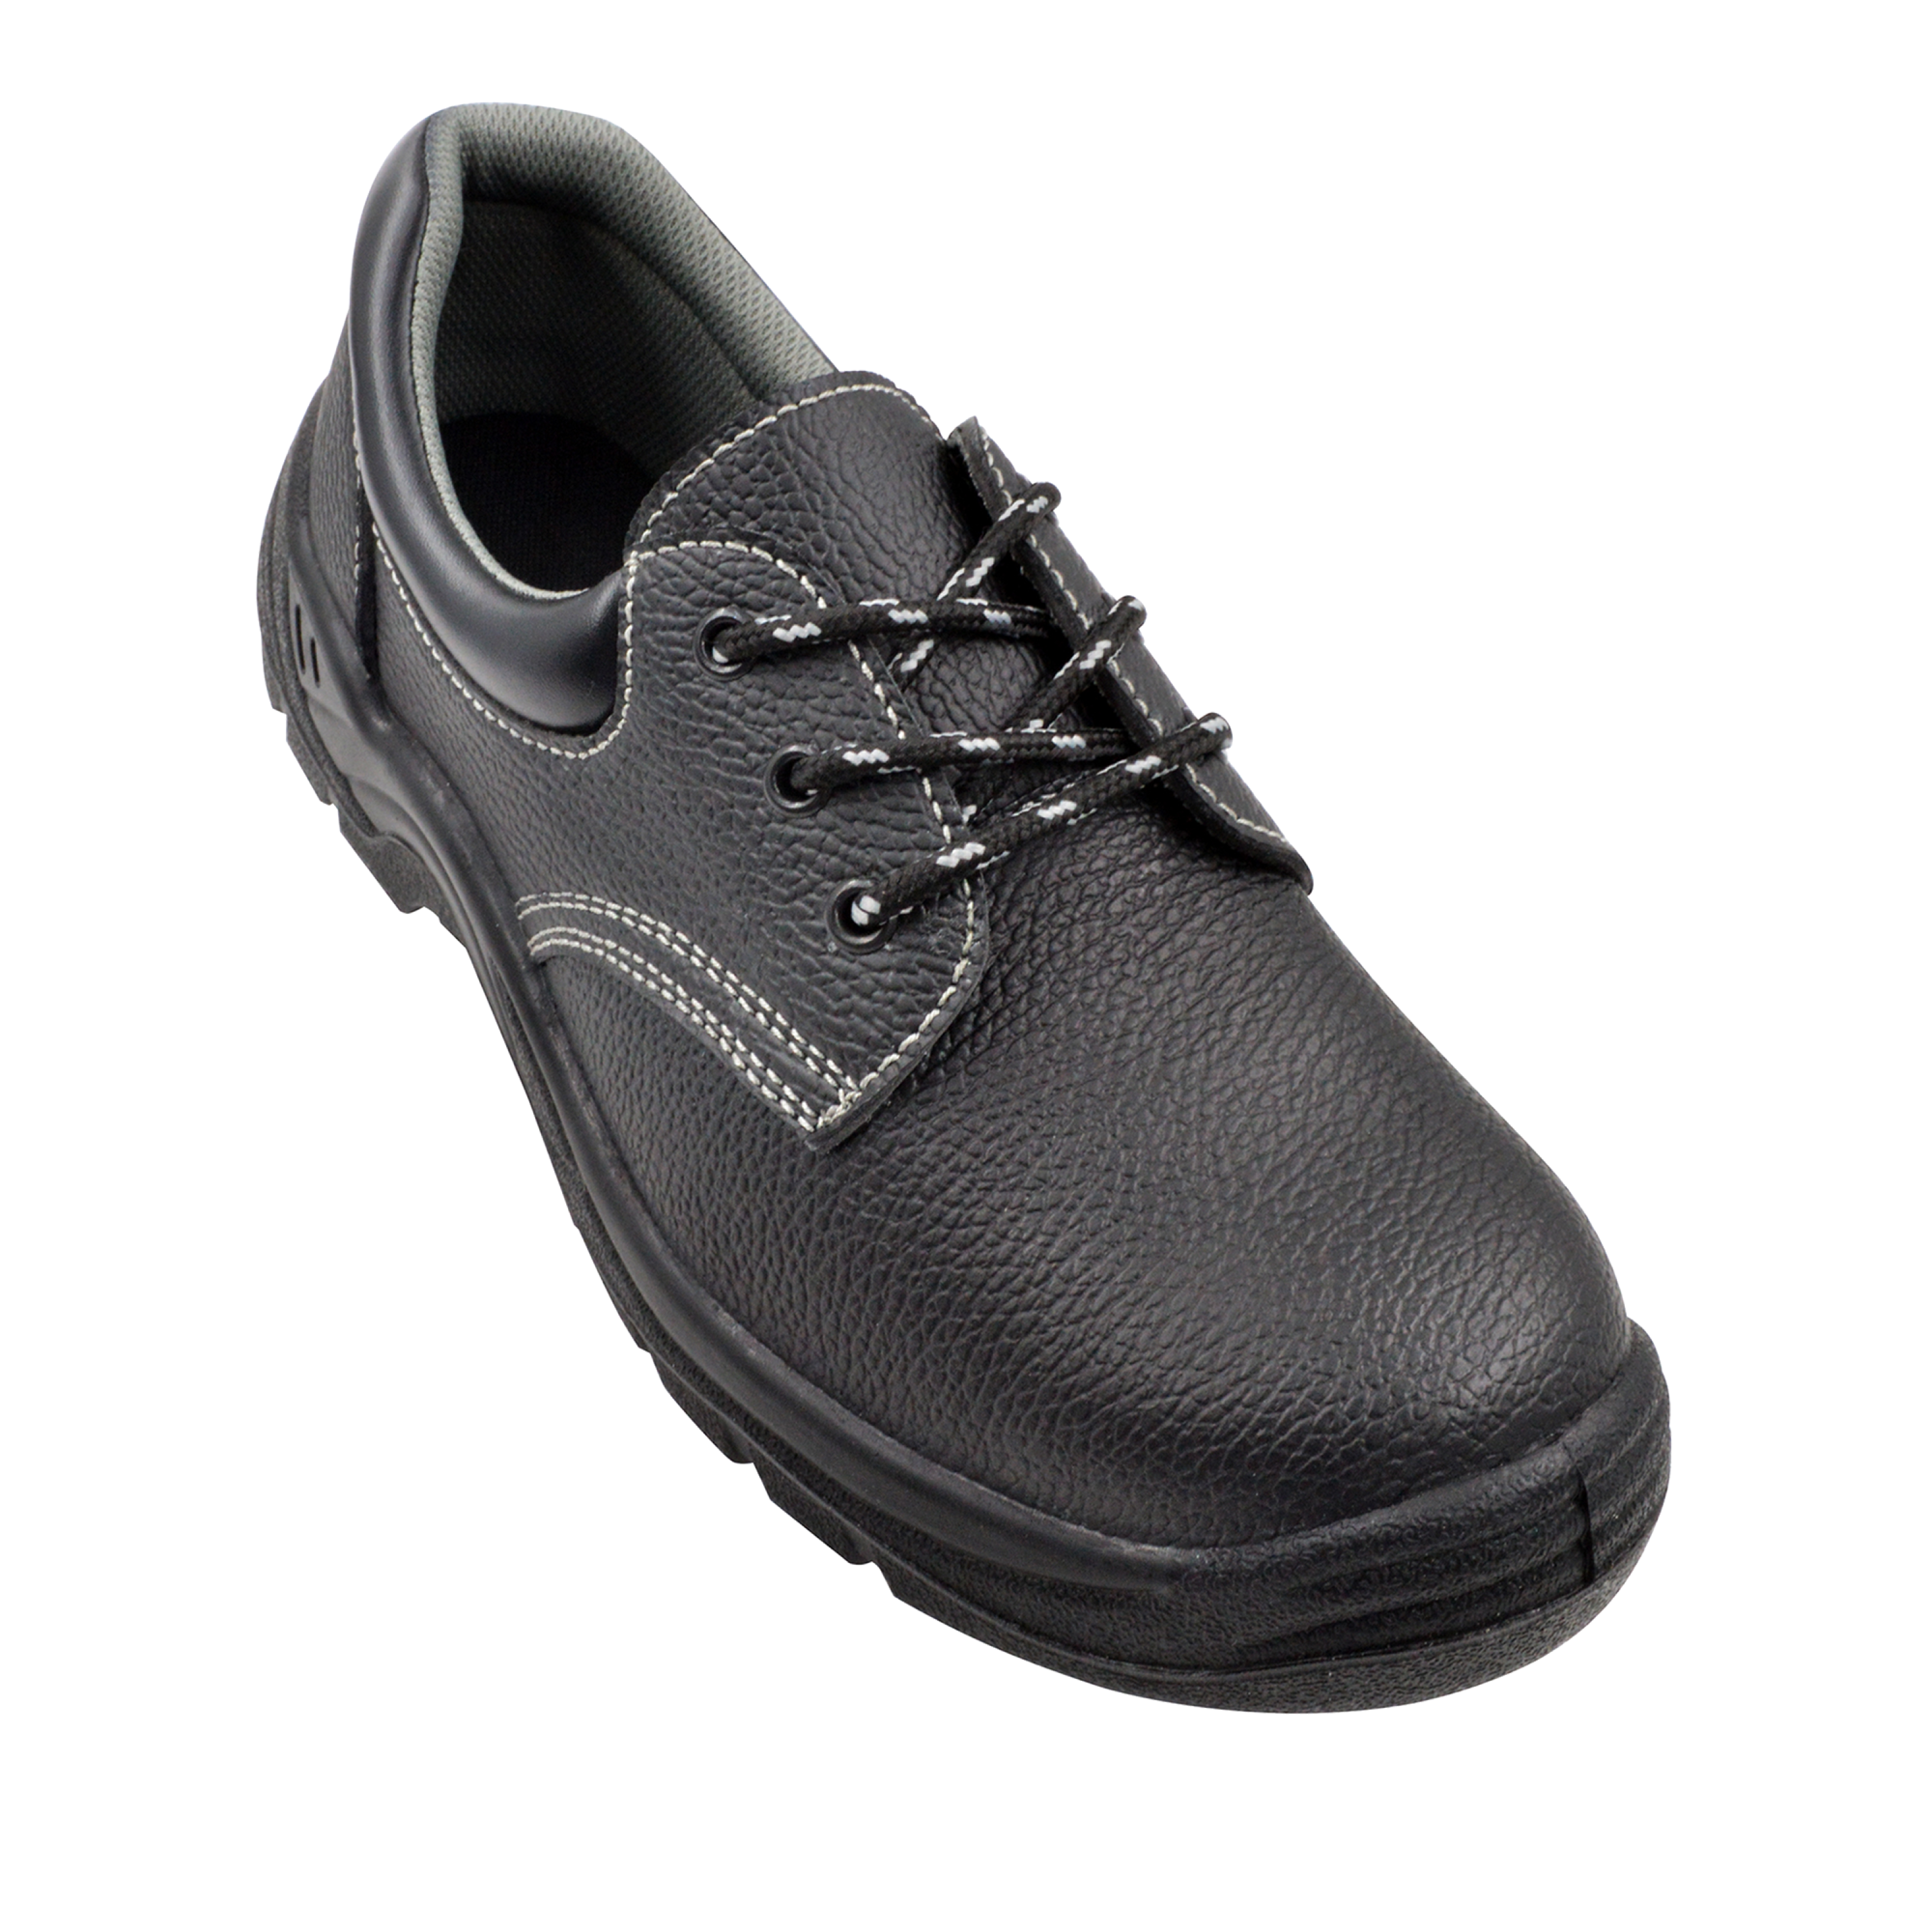 Zapatos de seguridad negro t38